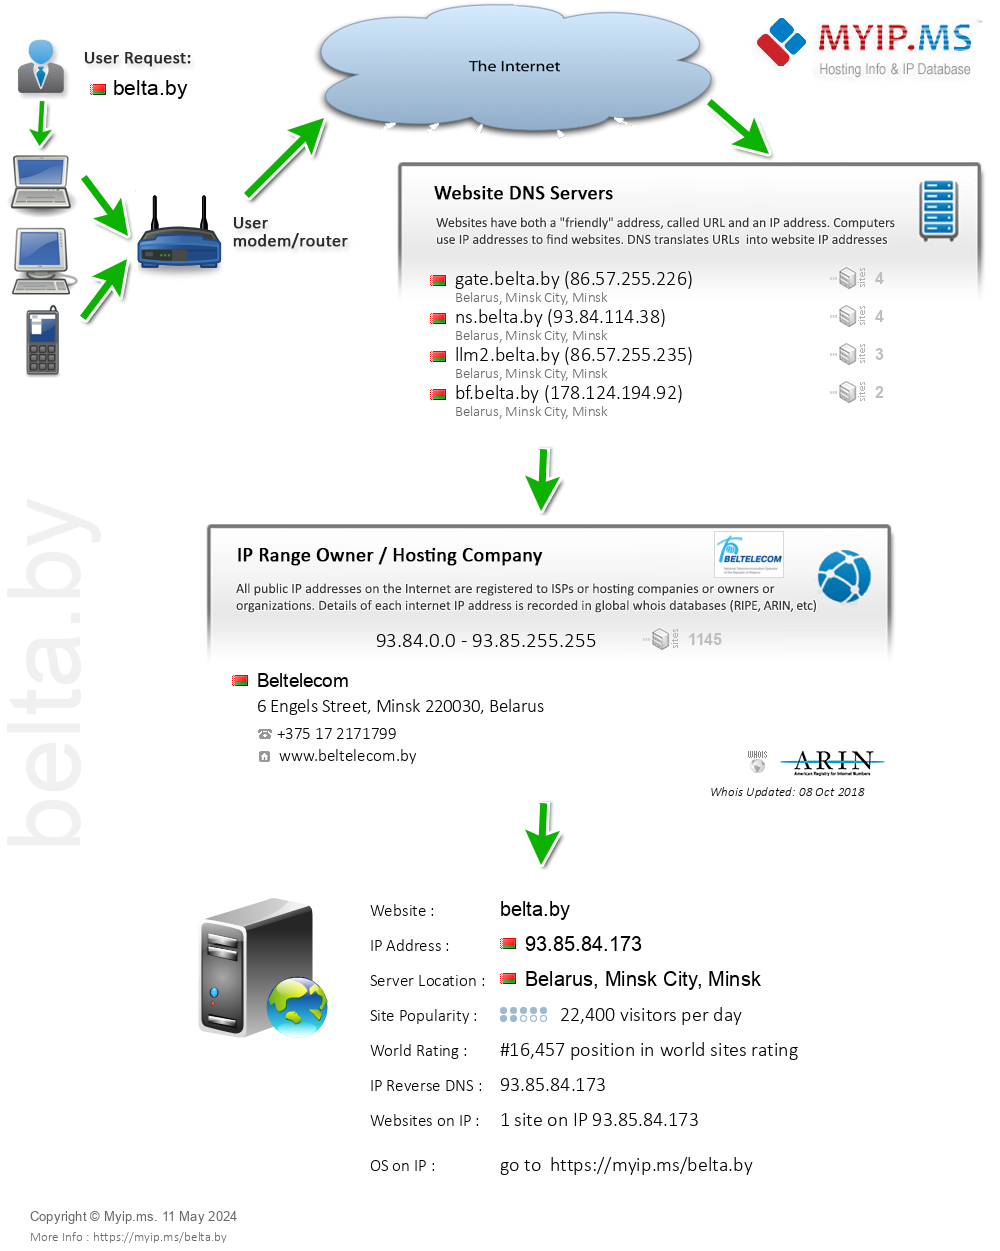 Belta.by - Website Hosting Visual IP Diagram